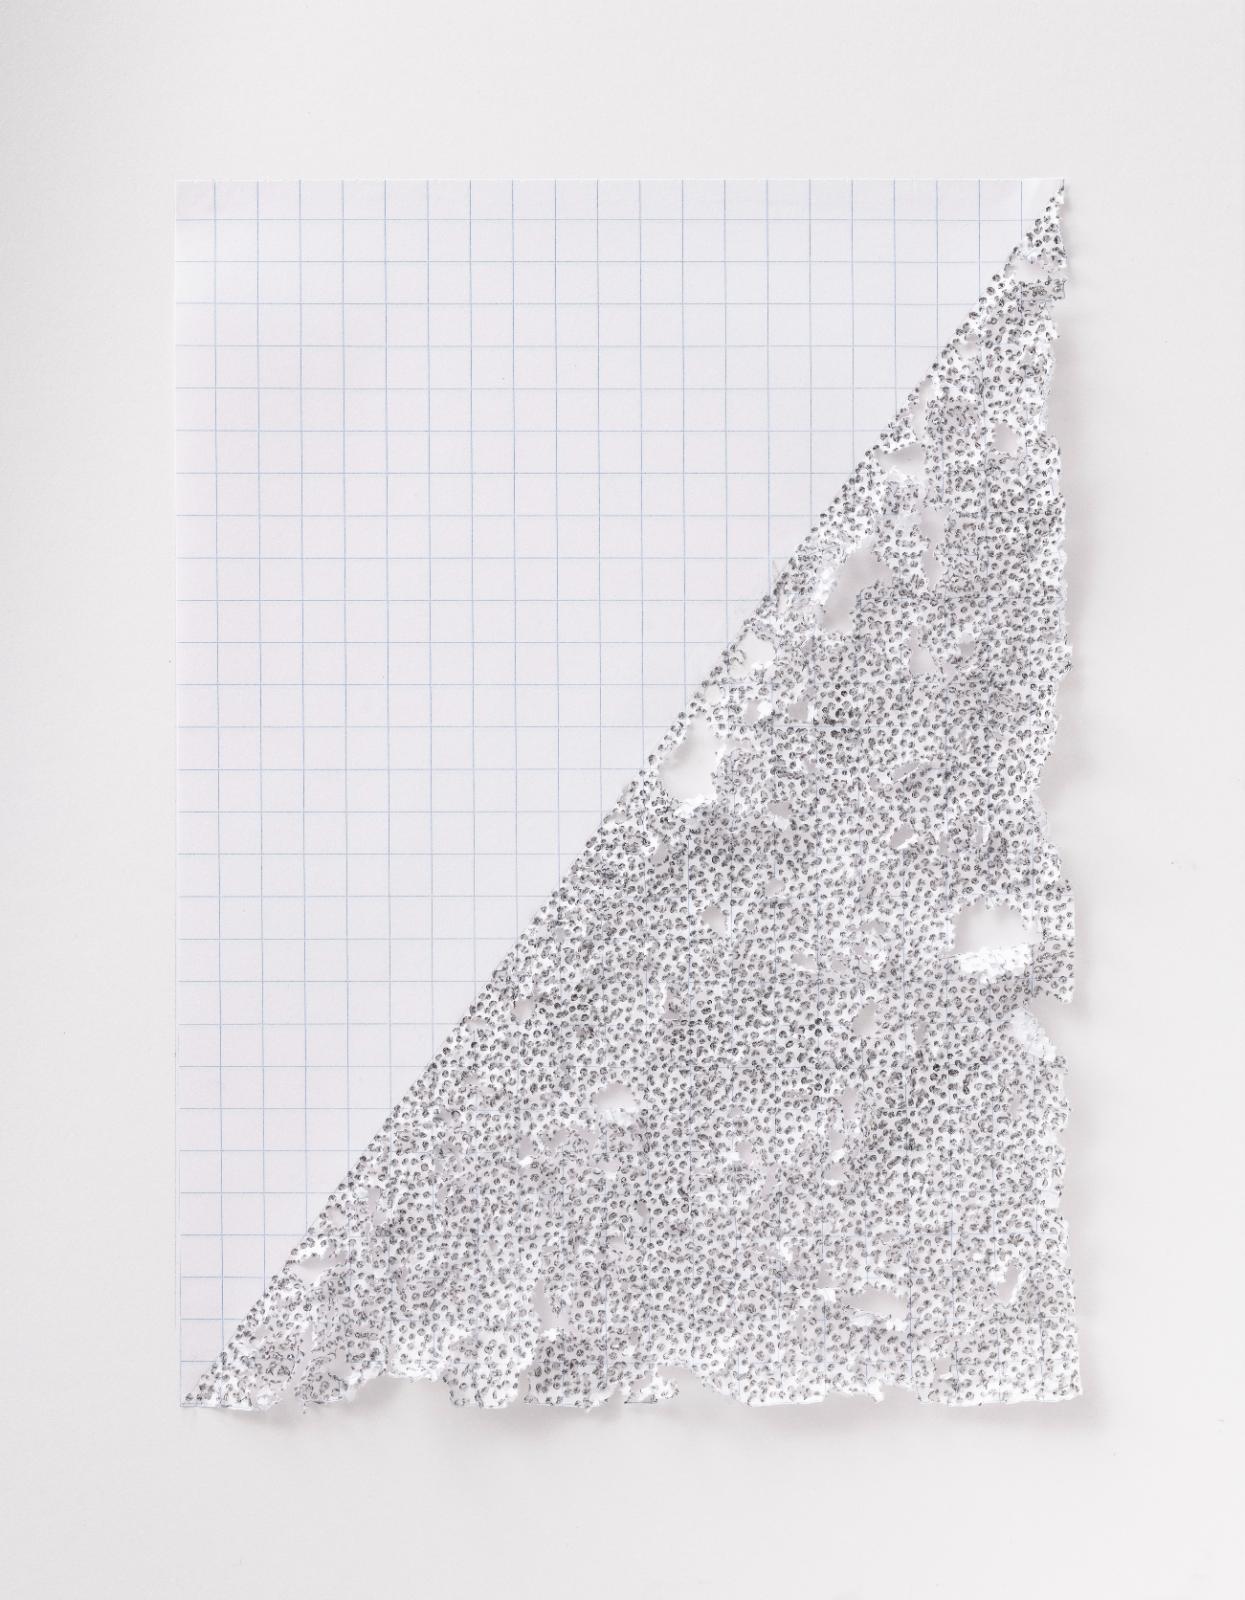 Martin Bruno Schmid, Bleistiftspitze in Papier #15, 2020, Bleistift in Papier, 41 × 31 cm, Preis auf Anfrage